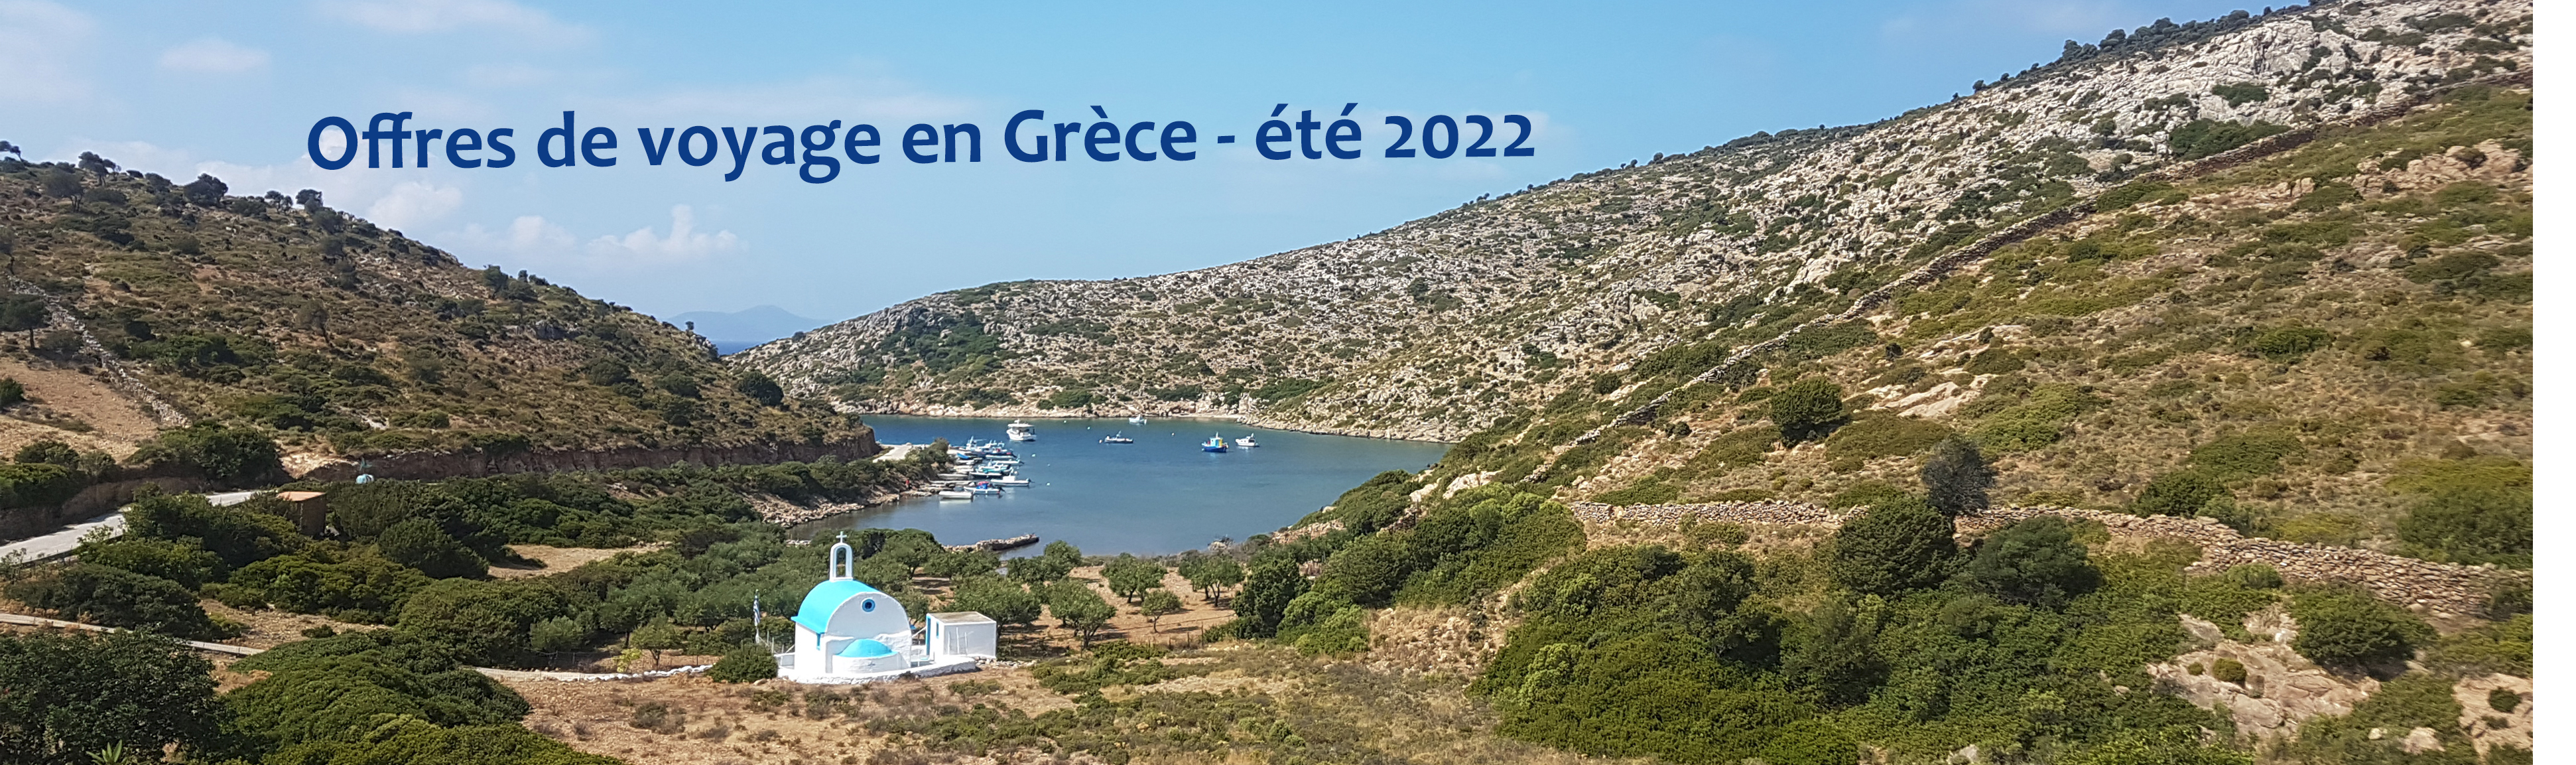 Offres de voyage en Grèce - été 2022